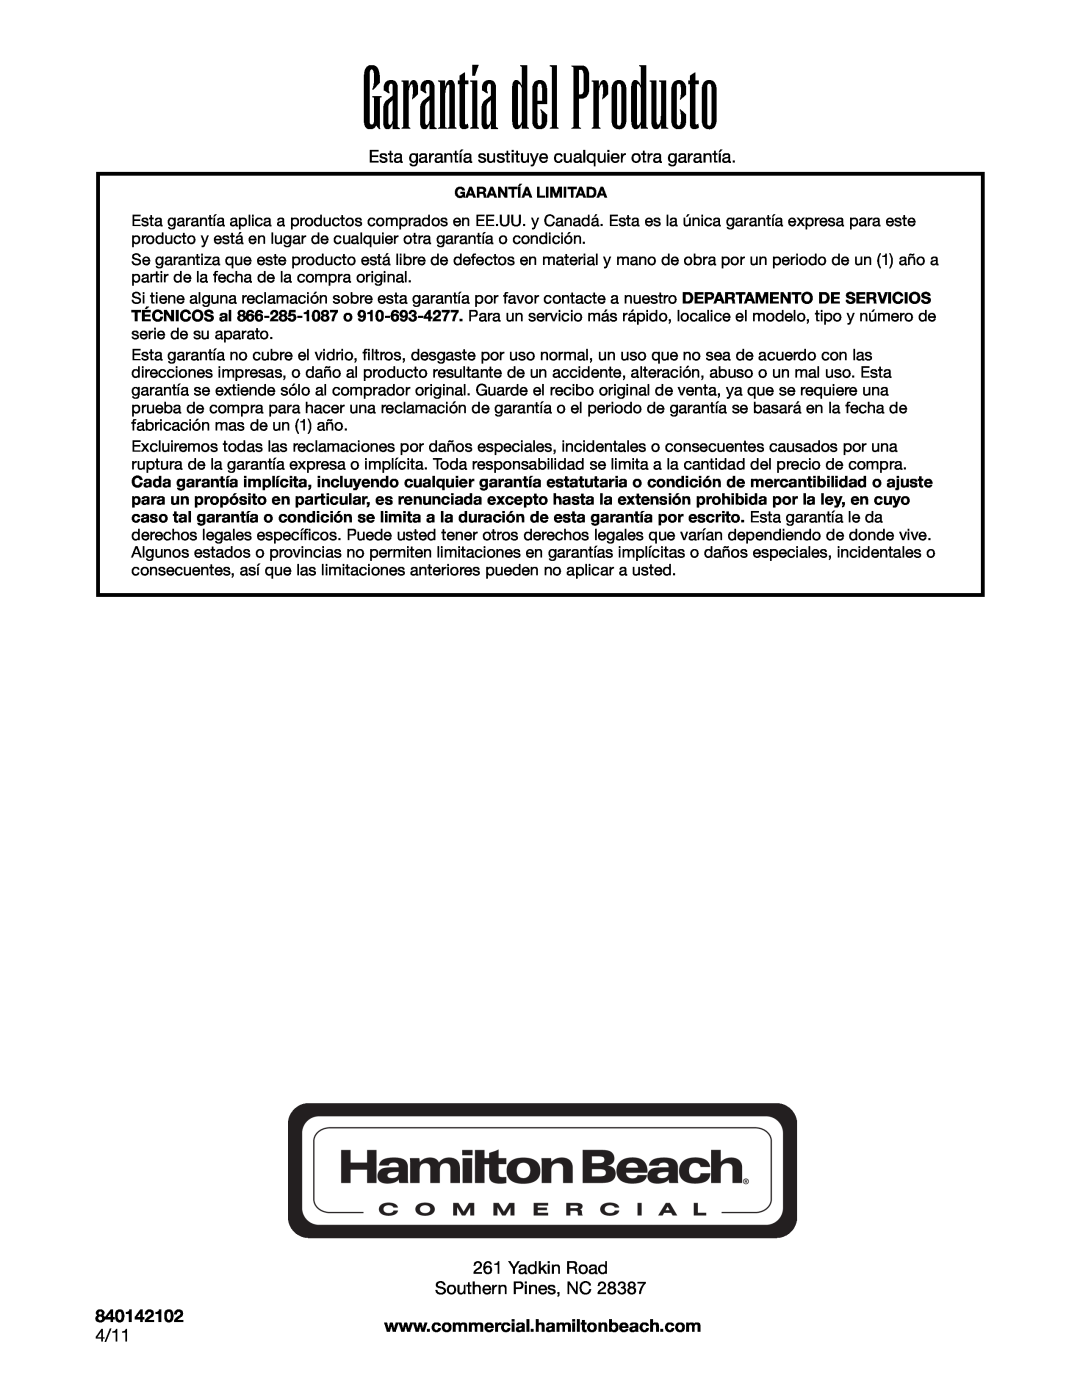 Hamilton Beach HBB908 Garantía del Producto, Esta garantía sustituye cualquier otra garantía, 840142102, 4/11 